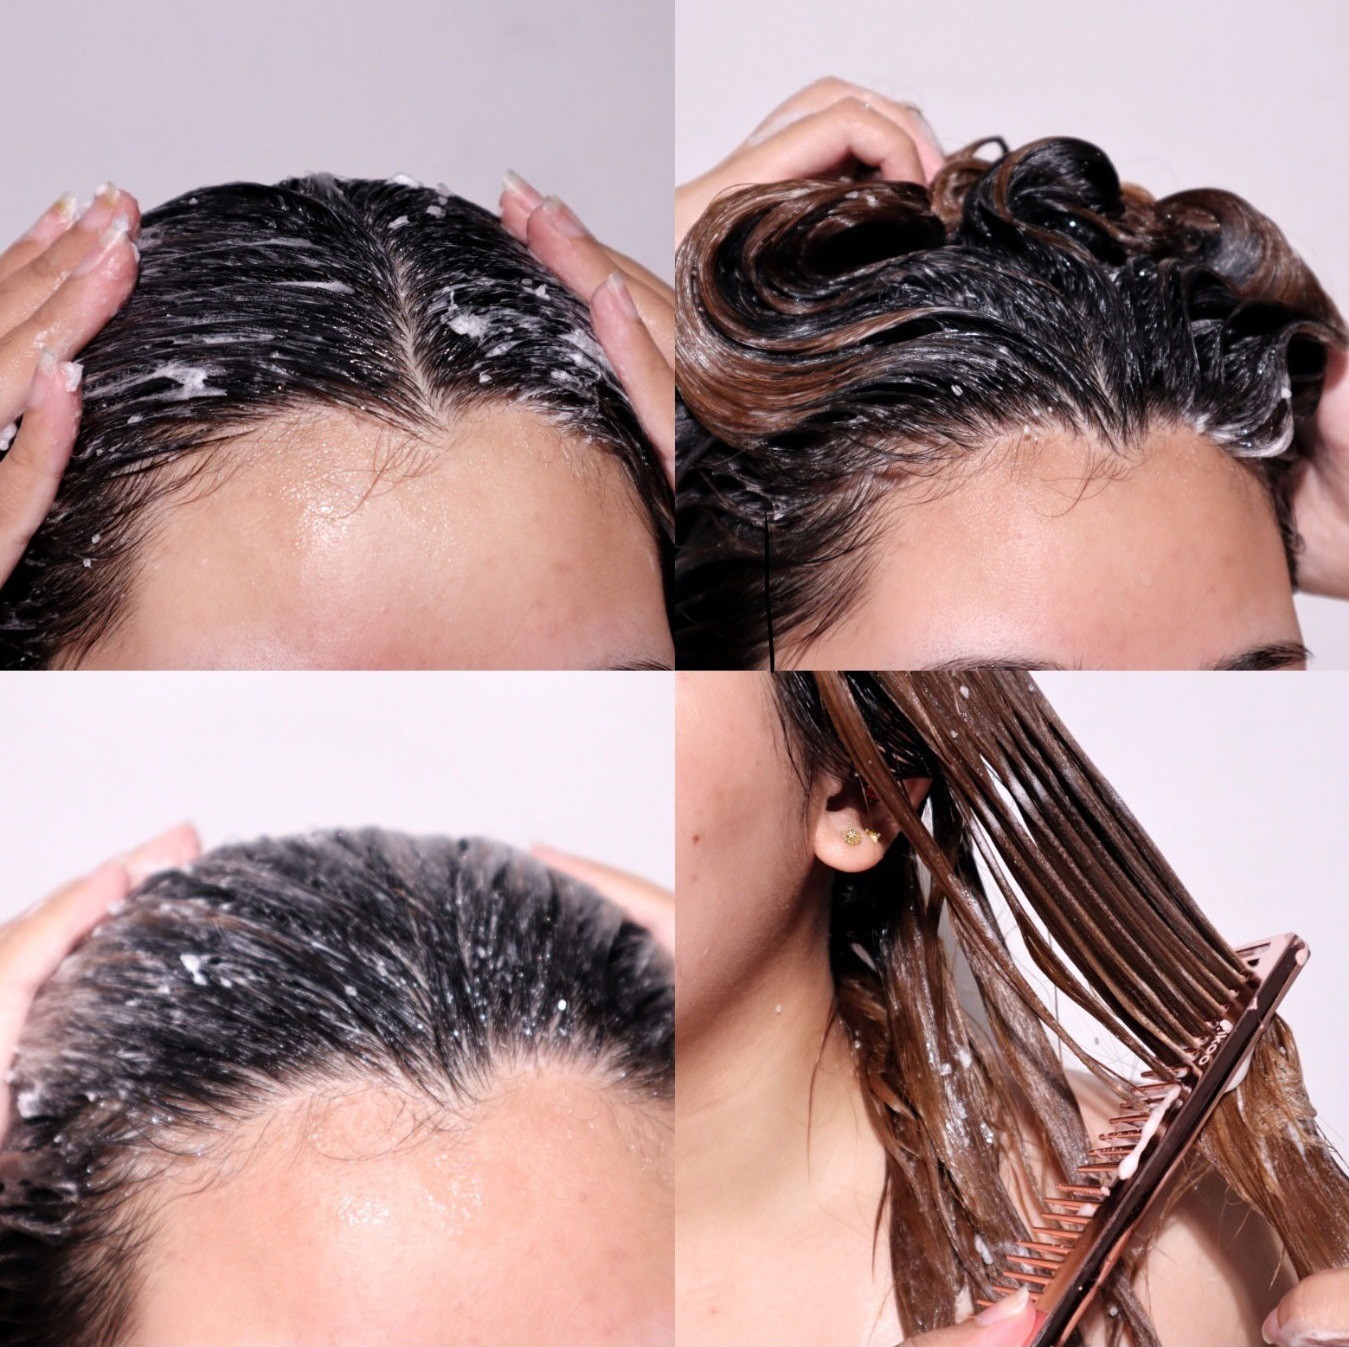 Dùng thử muối tẩy da chết tóc, tóc không chỉ mượt mà còn mọc nhanh hơn hẳn - Ảnh 3.